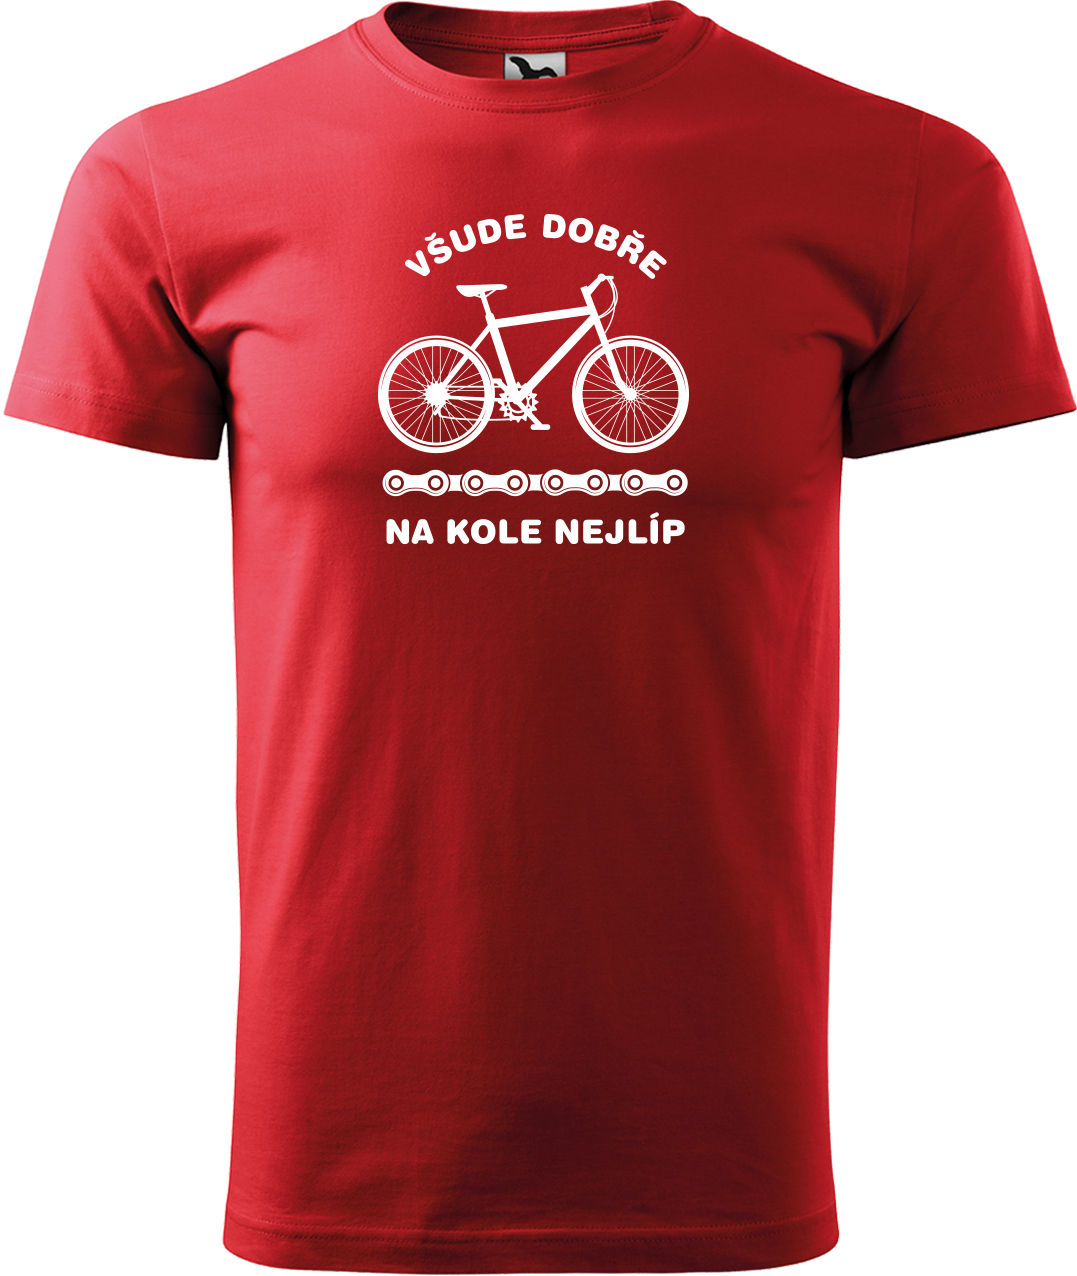 Pánské tričko s kolem - Všude dobře, na kole nejlíp Velikost: L, Barva: Červená (07)